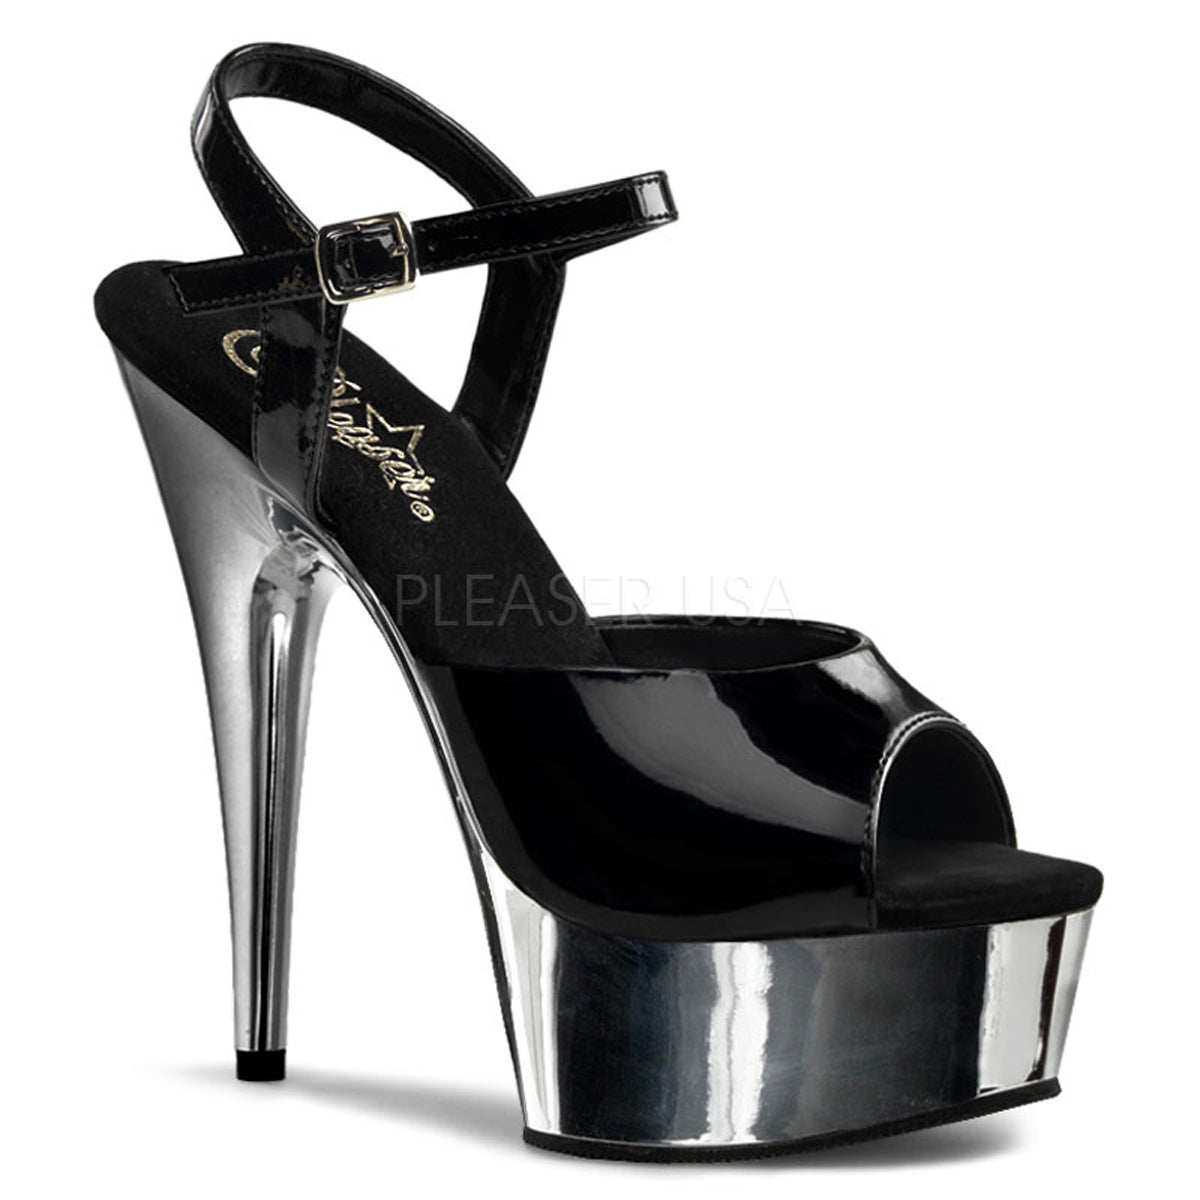 Delight-609 Black/Silver Platform Sandals